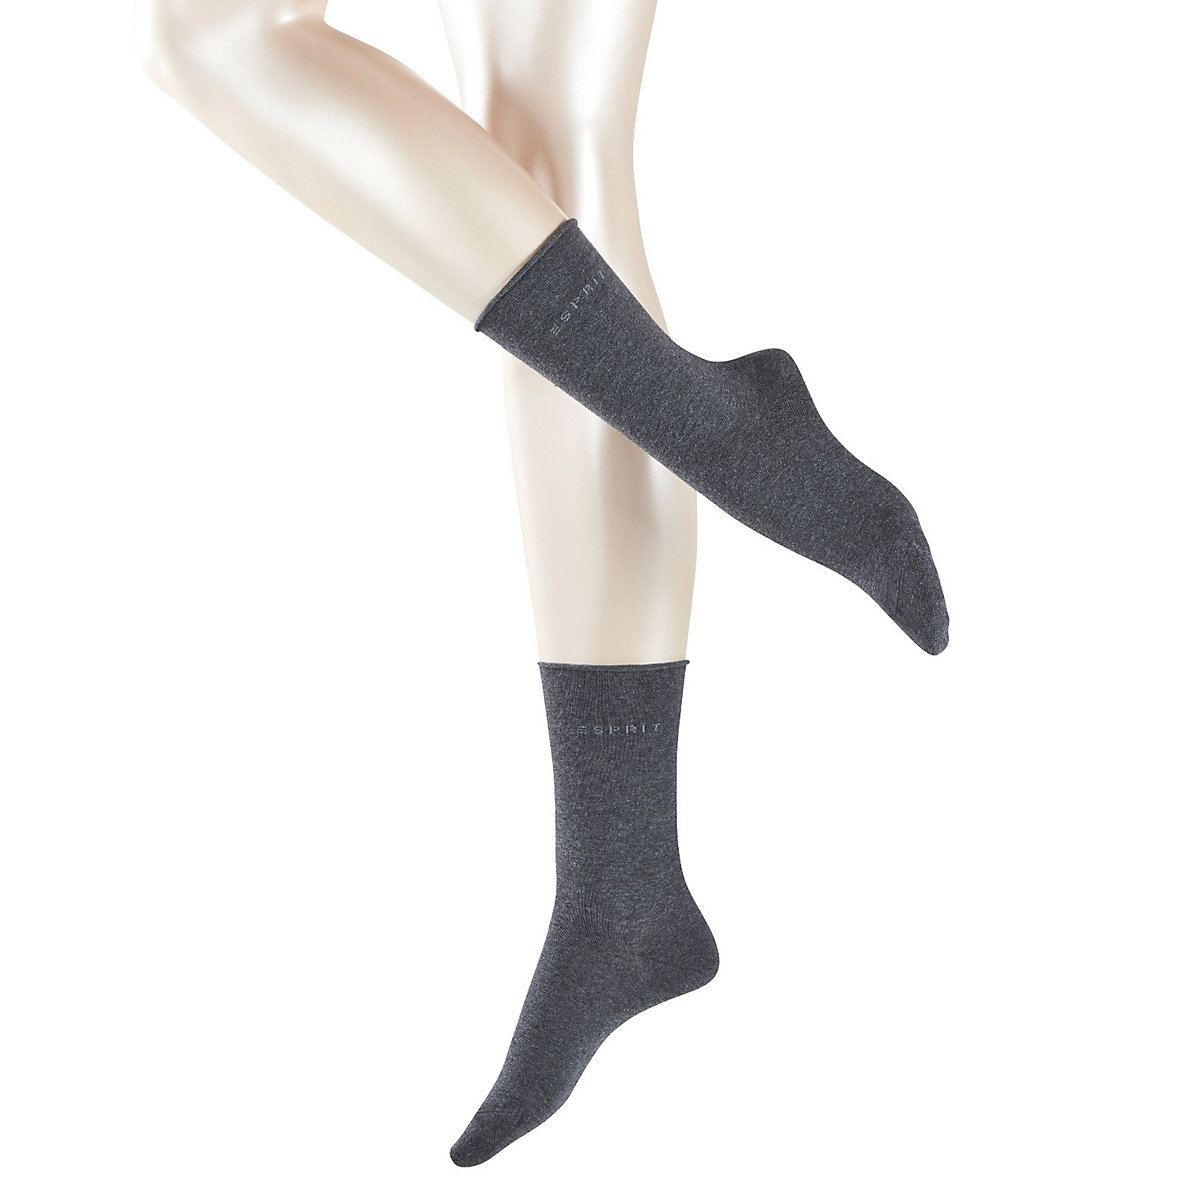 ESPRIT Damen Socken 2er Pack Rollrand feinste Baumwollmischung einfarbig Socken anthrazit